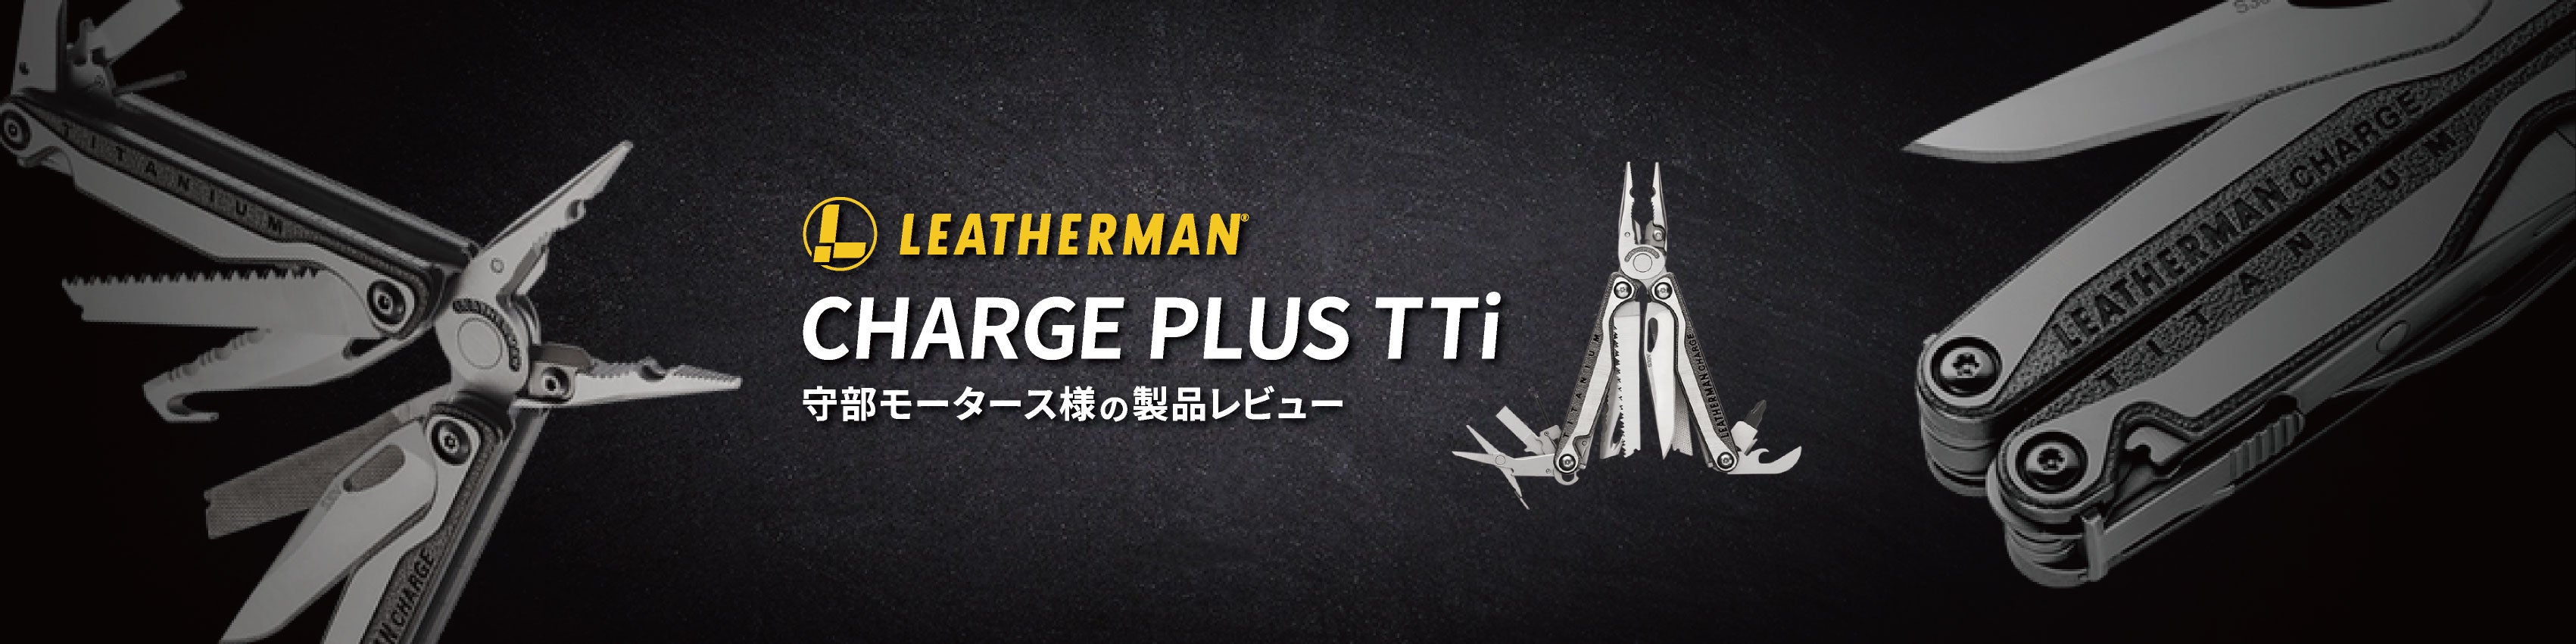 得価超特価LEATHERMANレザーマン CHARGE Plus TTi [並行輸入品] 登山ウェア・アウトドアウェア